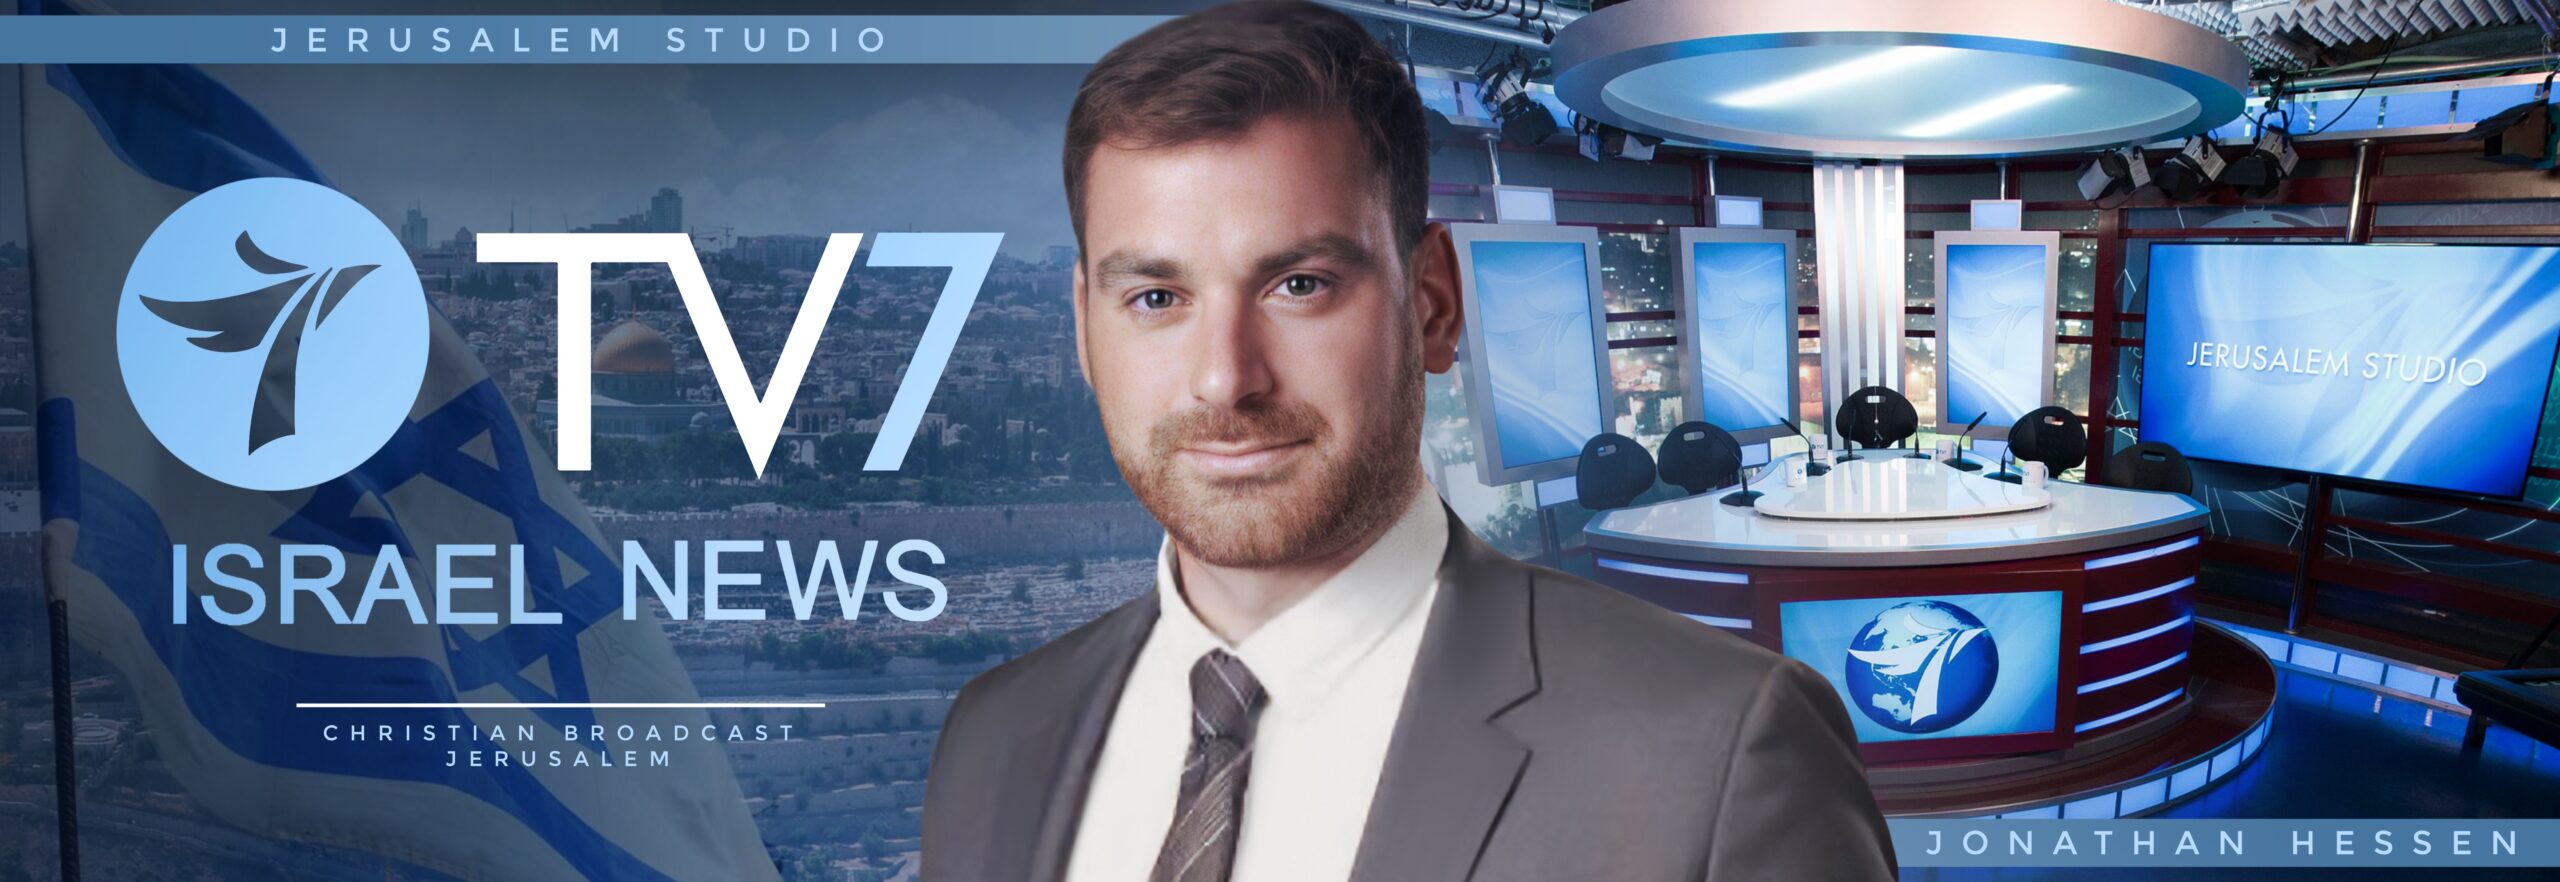 TV7 Israel News Ad